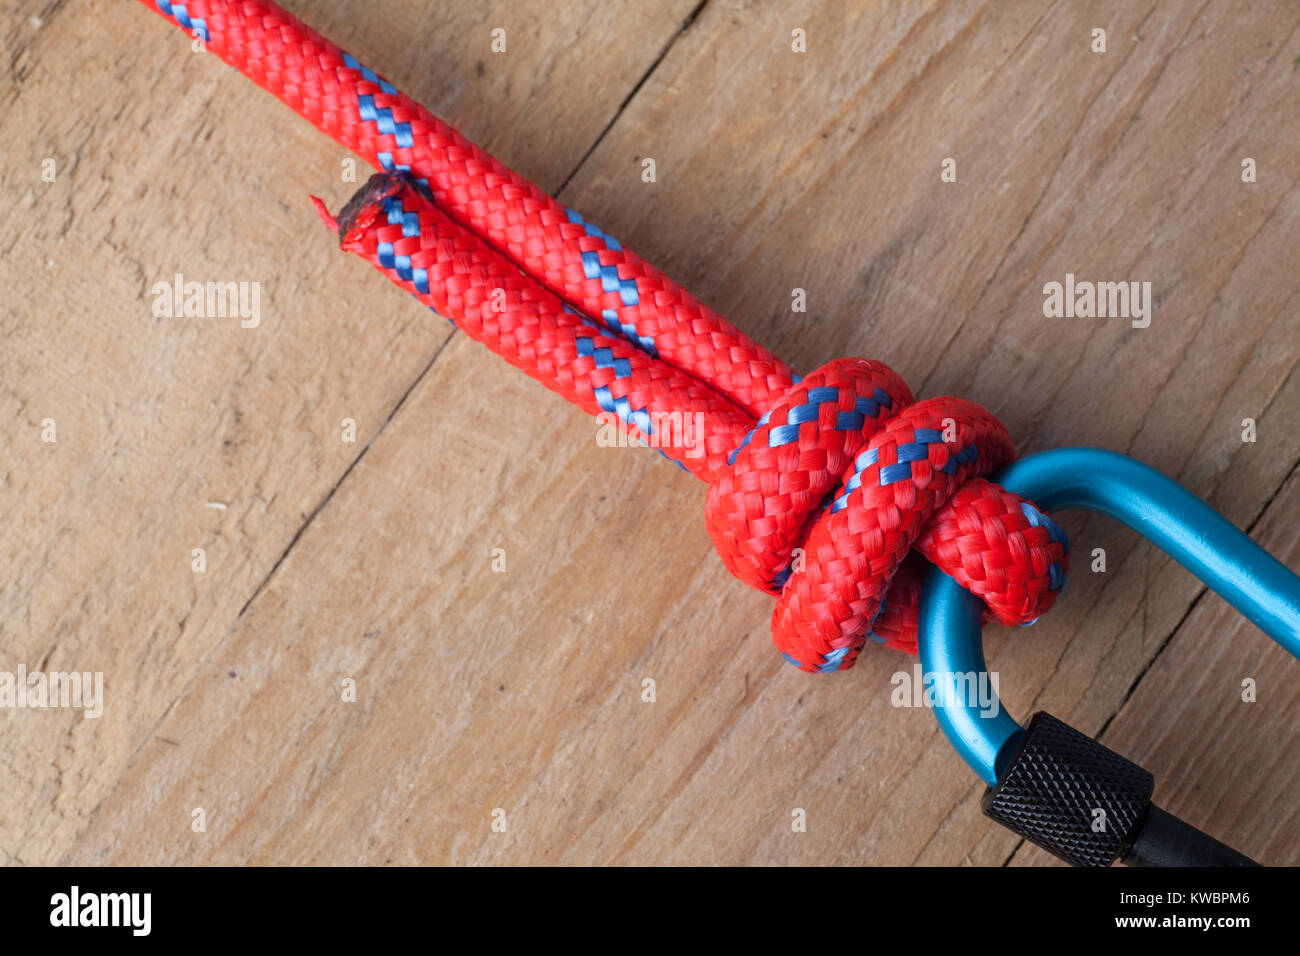 Fishermans Knoten mit dem roten Seil und Karabiner Stockfotografie - Alamy